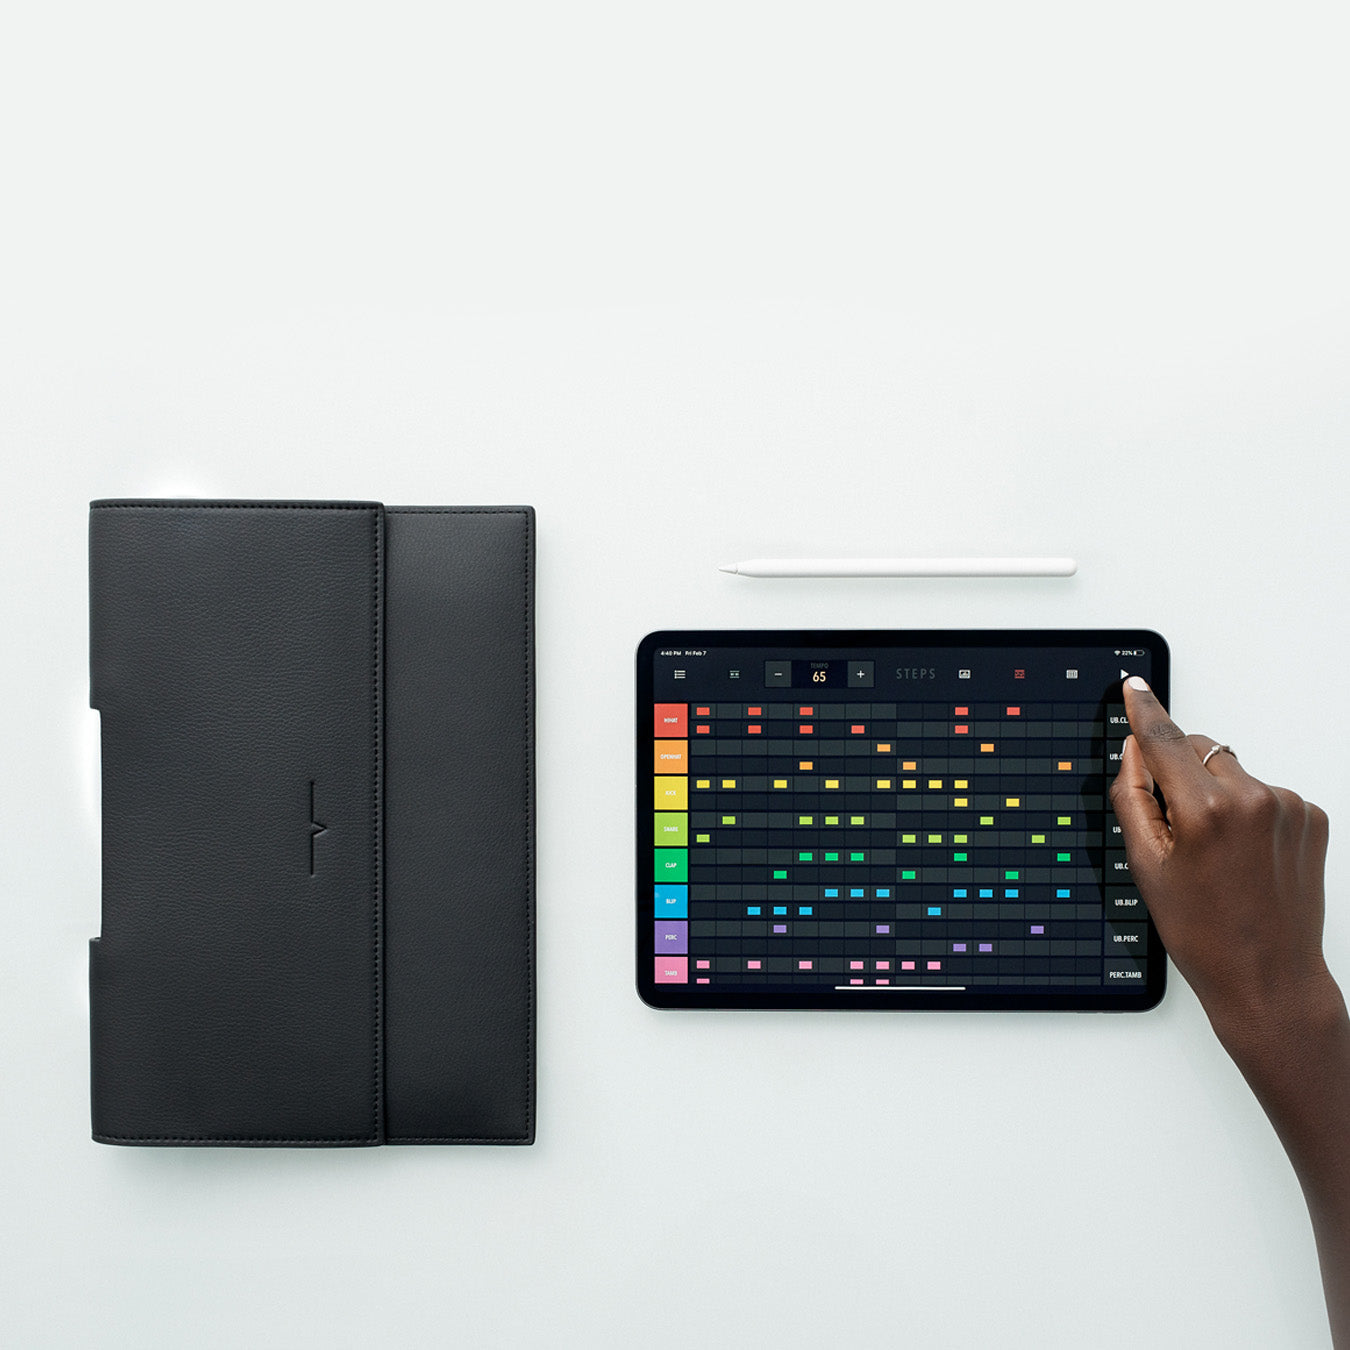 The iPad Holzhausen – Black 11-inch in Portfolio von